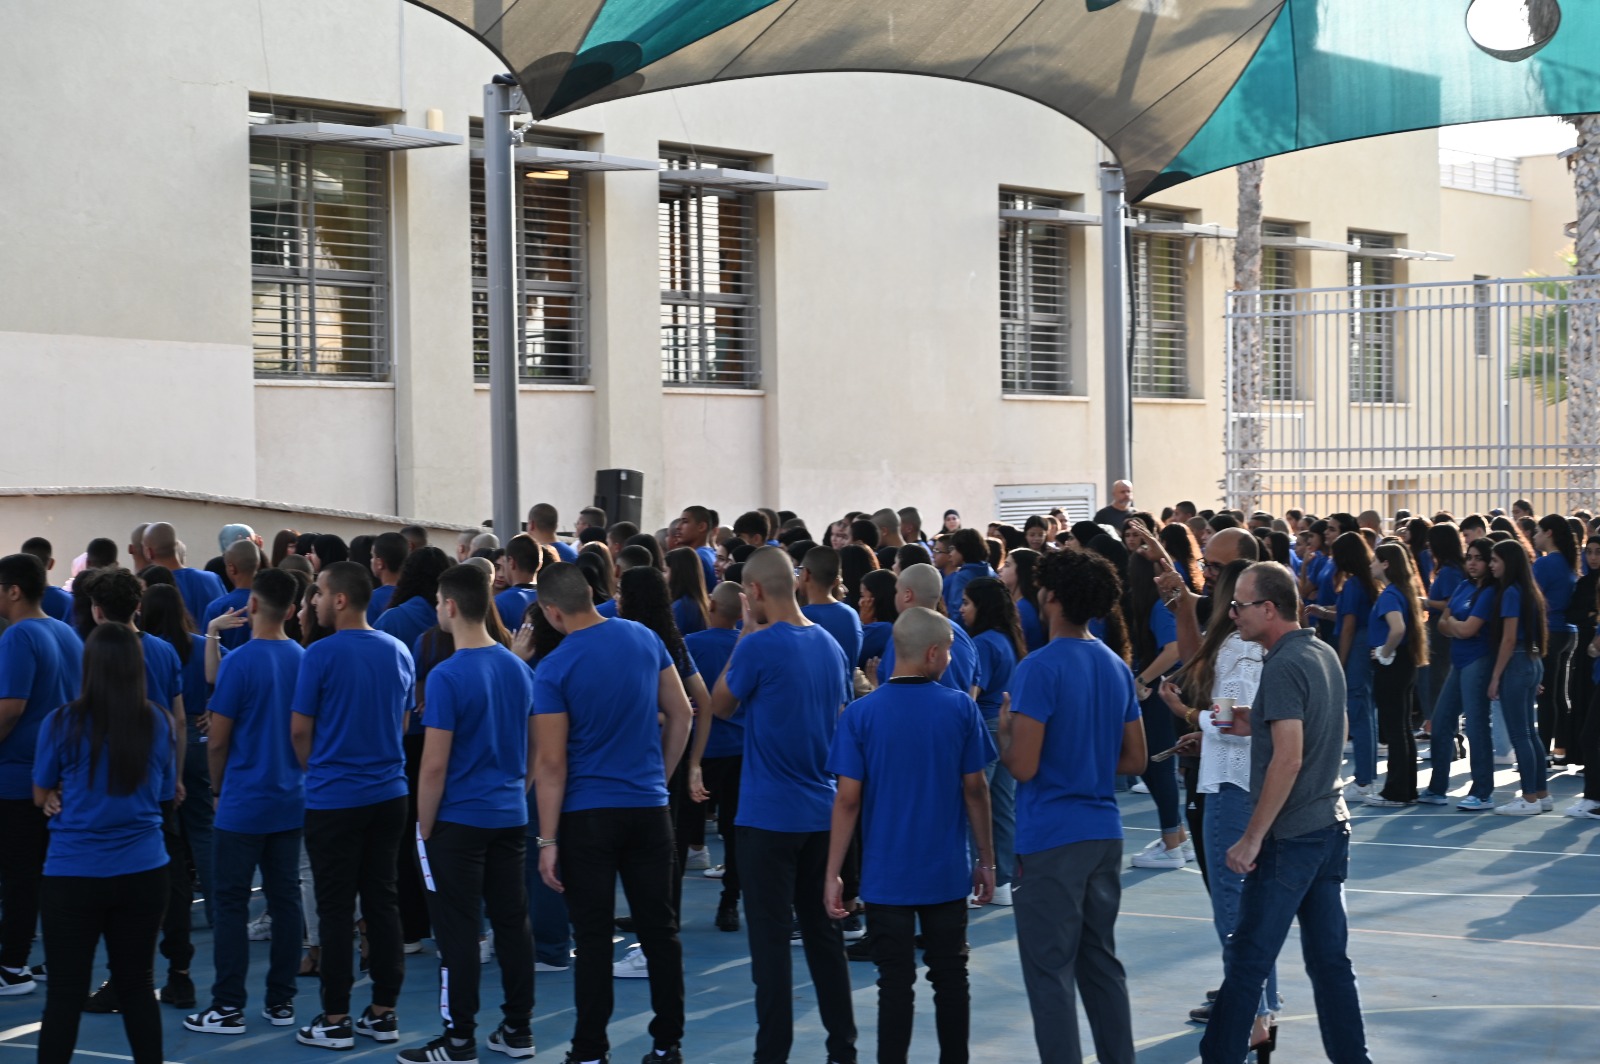  بالصور: افتتاح العام الدراسي الجديد - بالنجاح والتوفيق لطلابنا